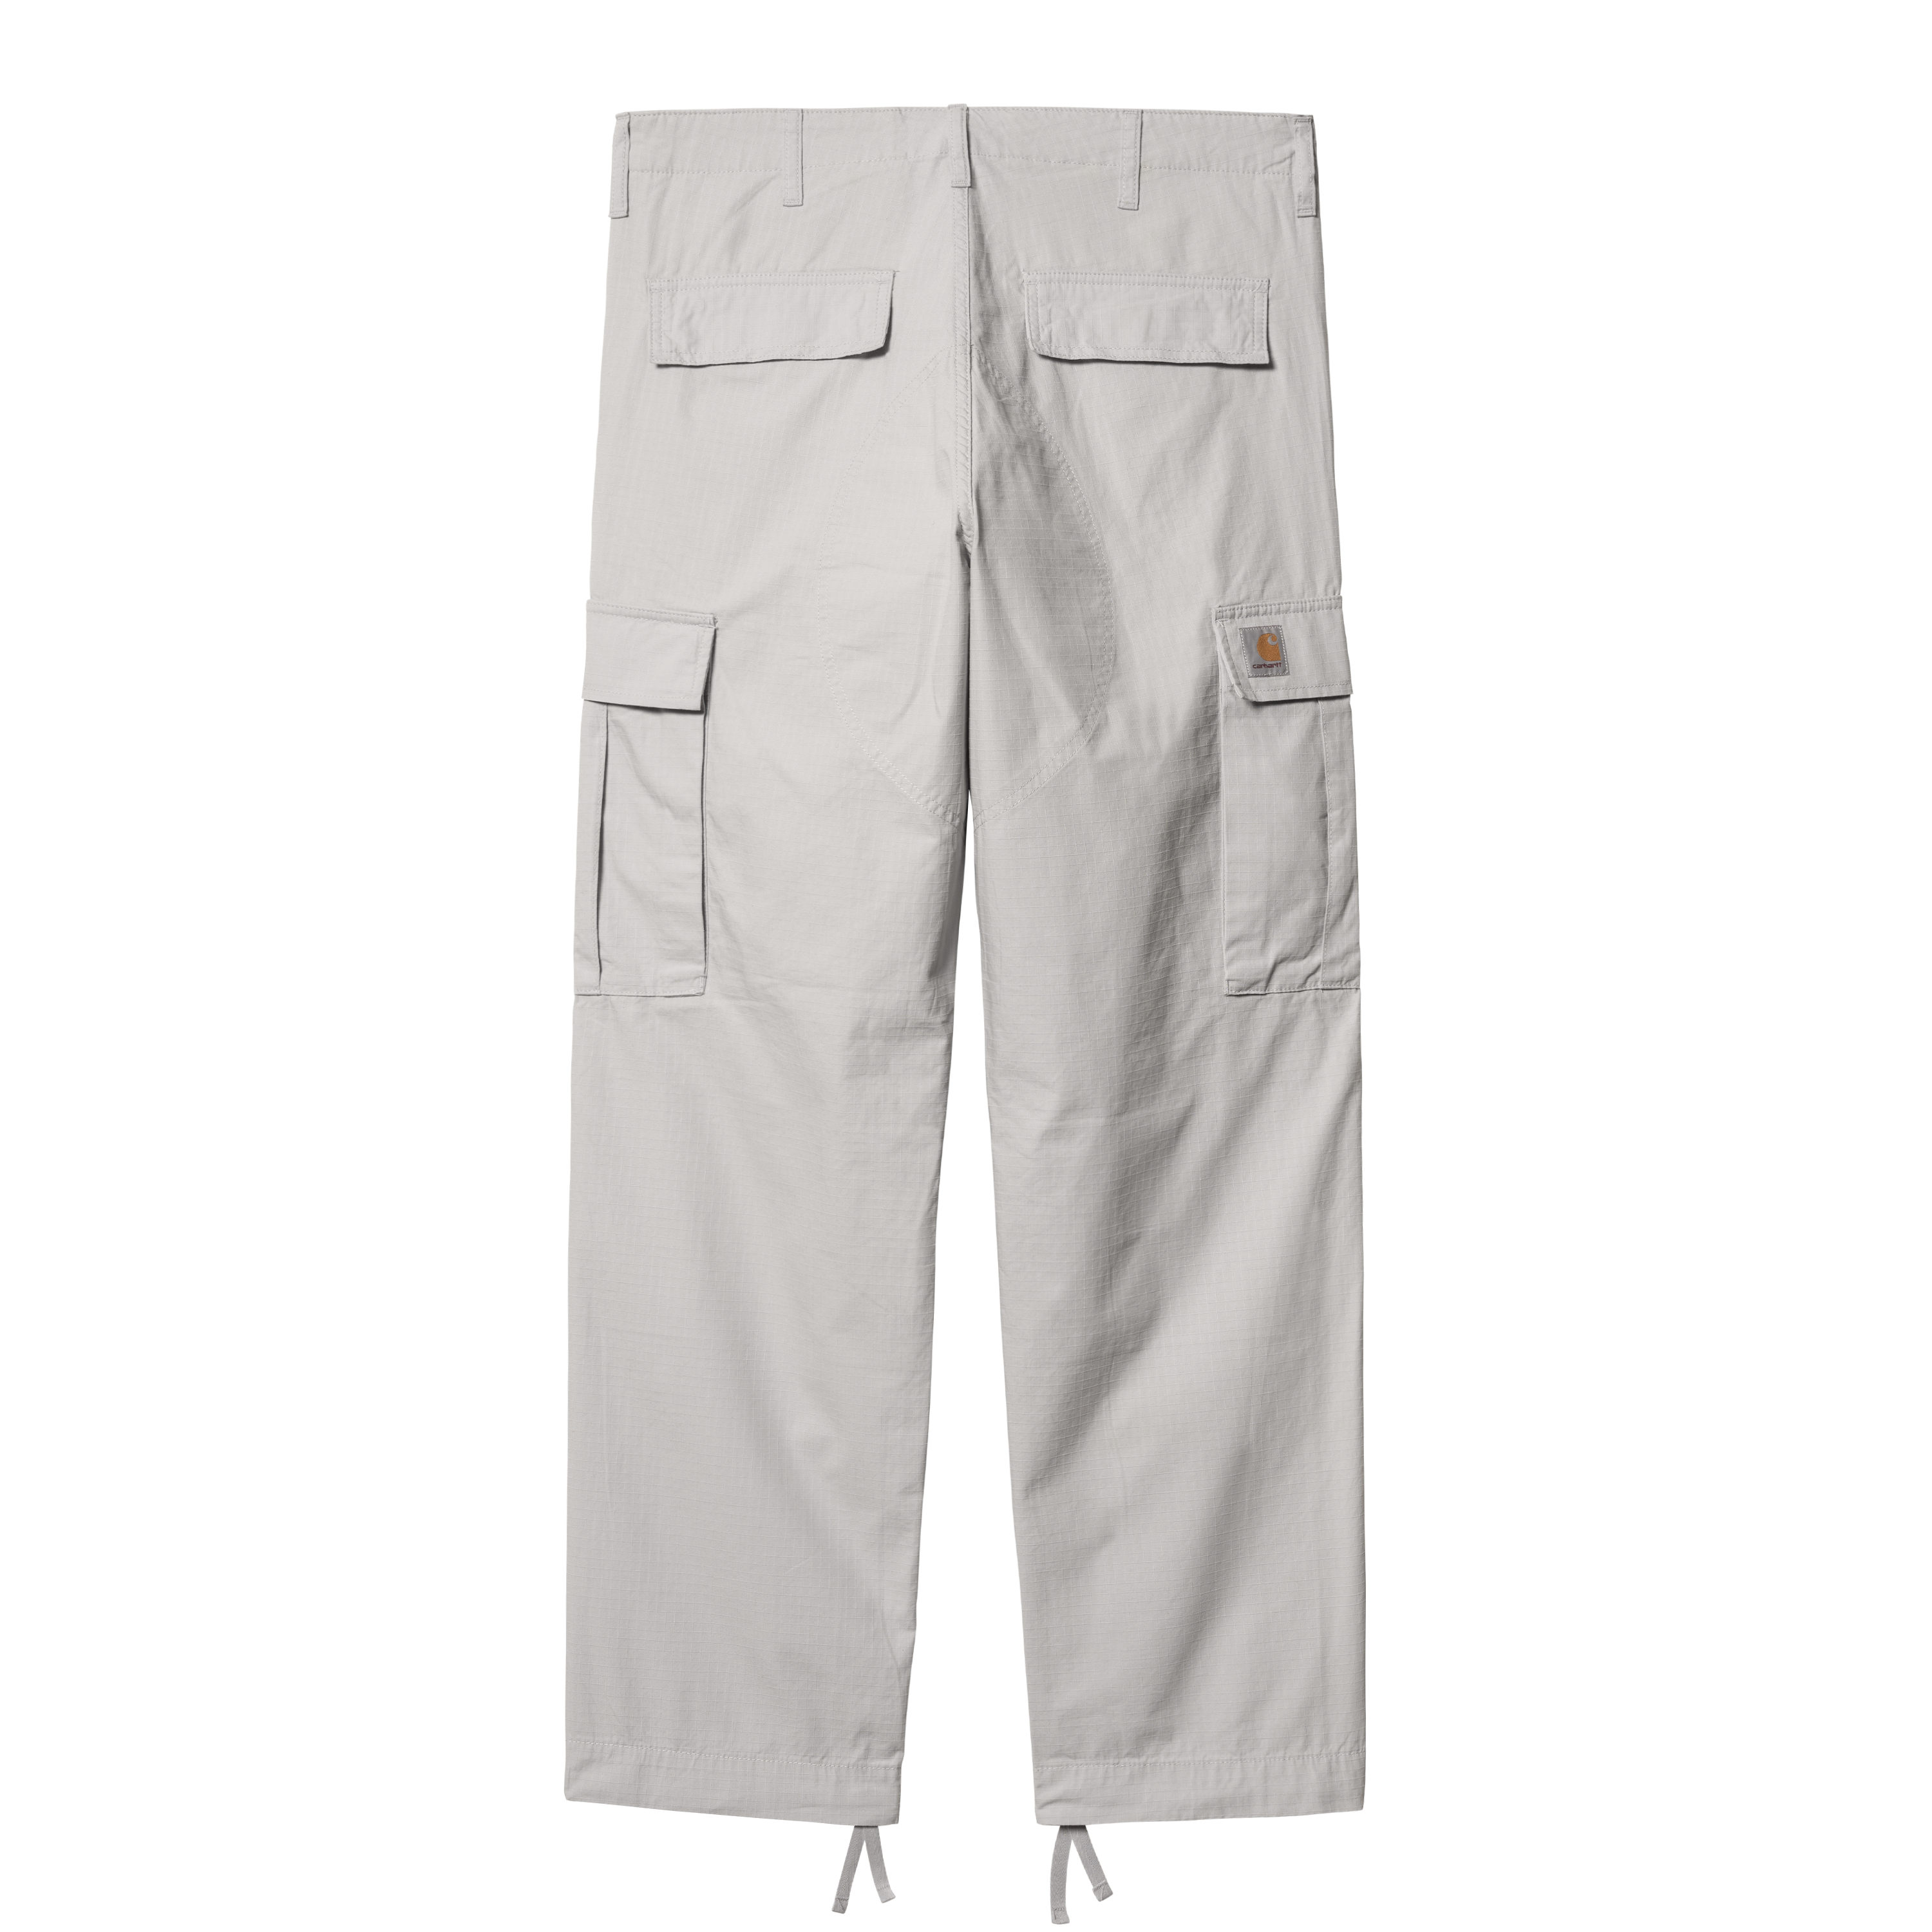 Carhartt WIP Regular Cargo Pant in Grey